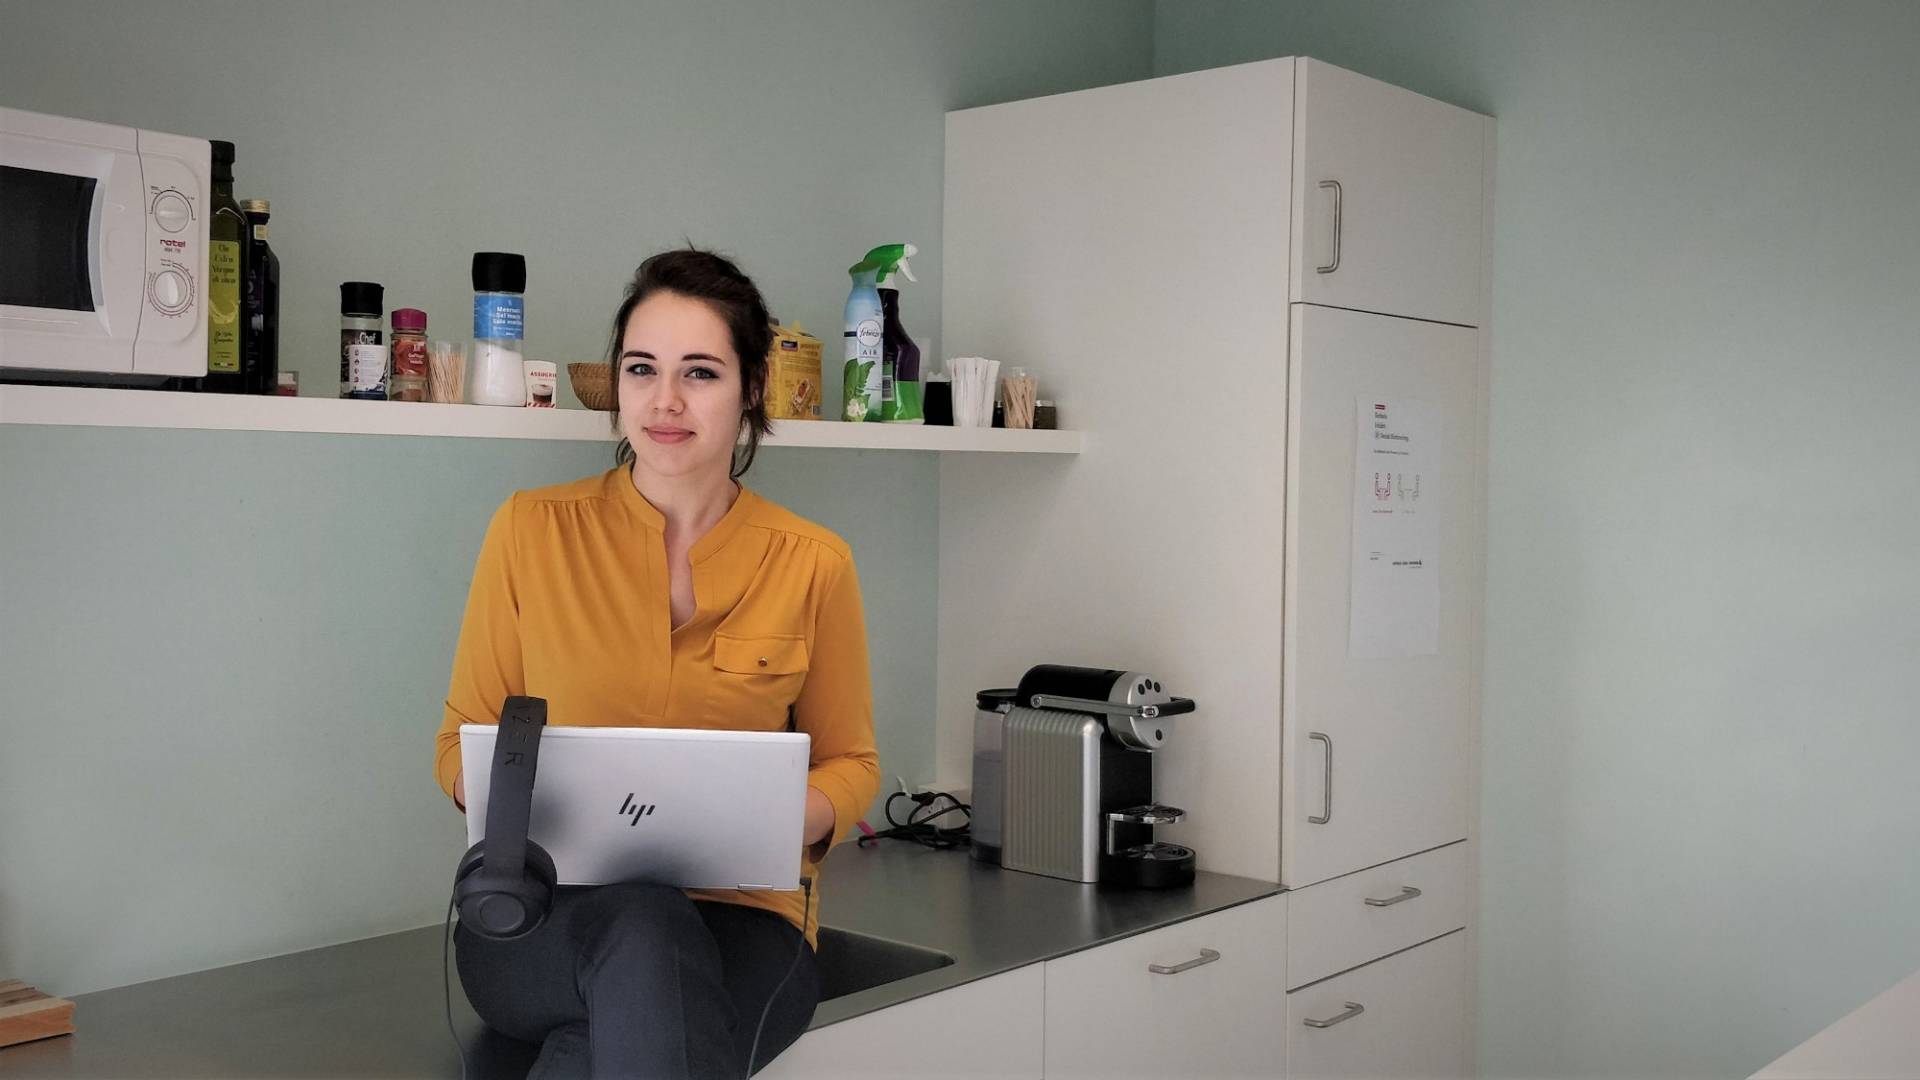 Caroline Stalder is sitting in the kitchen at her laptop.